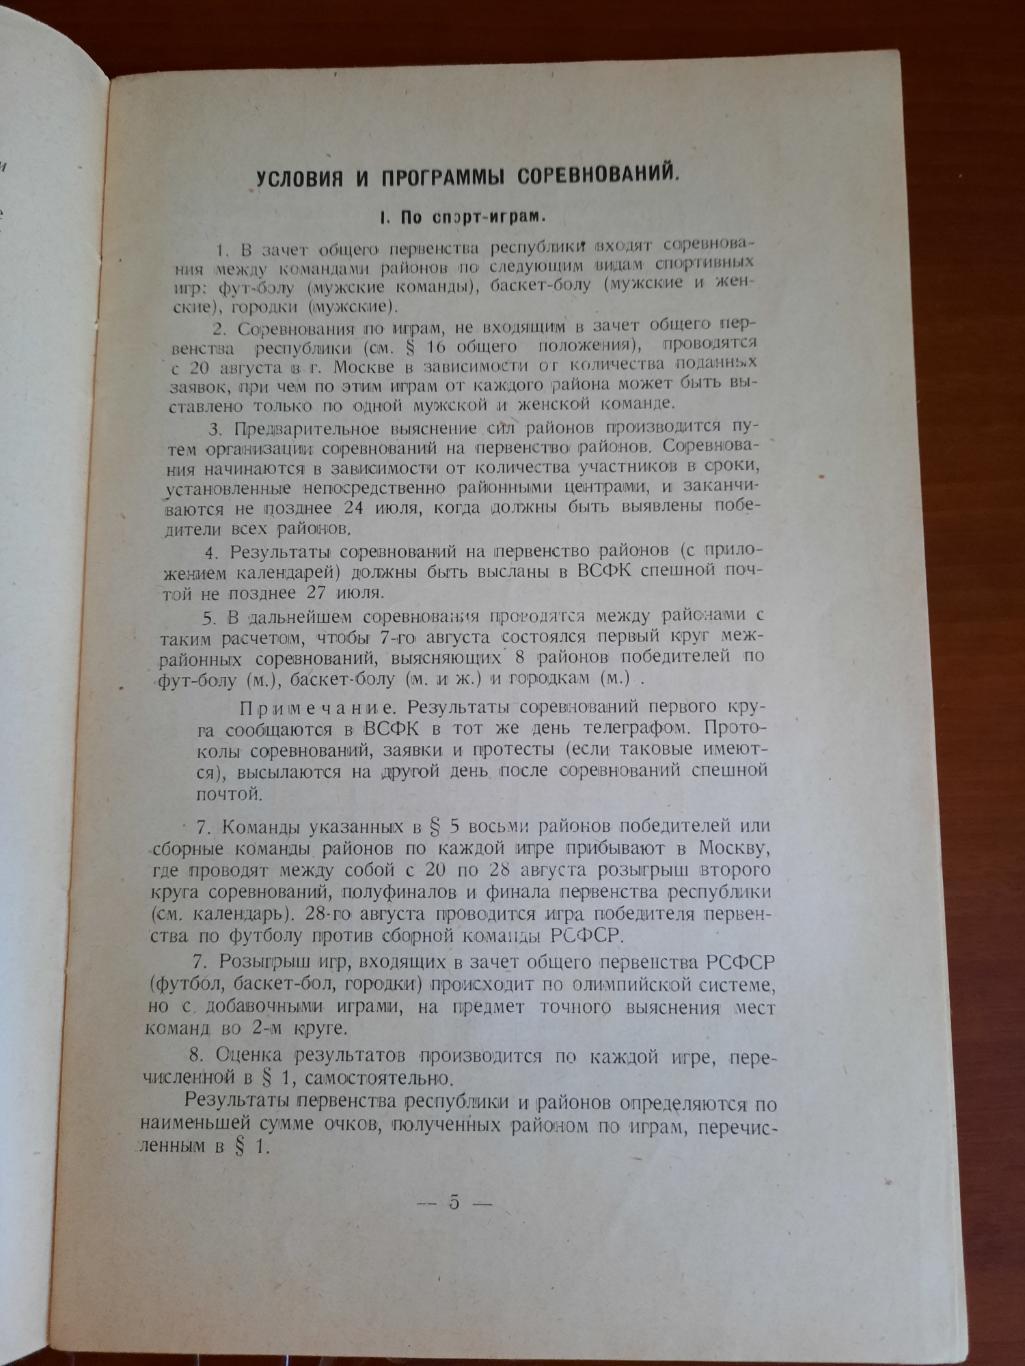 Бюллетень ВСФК № 5 1927 г. анонс первенства РСФСР футбол, легкая атлетика и т.д. 1